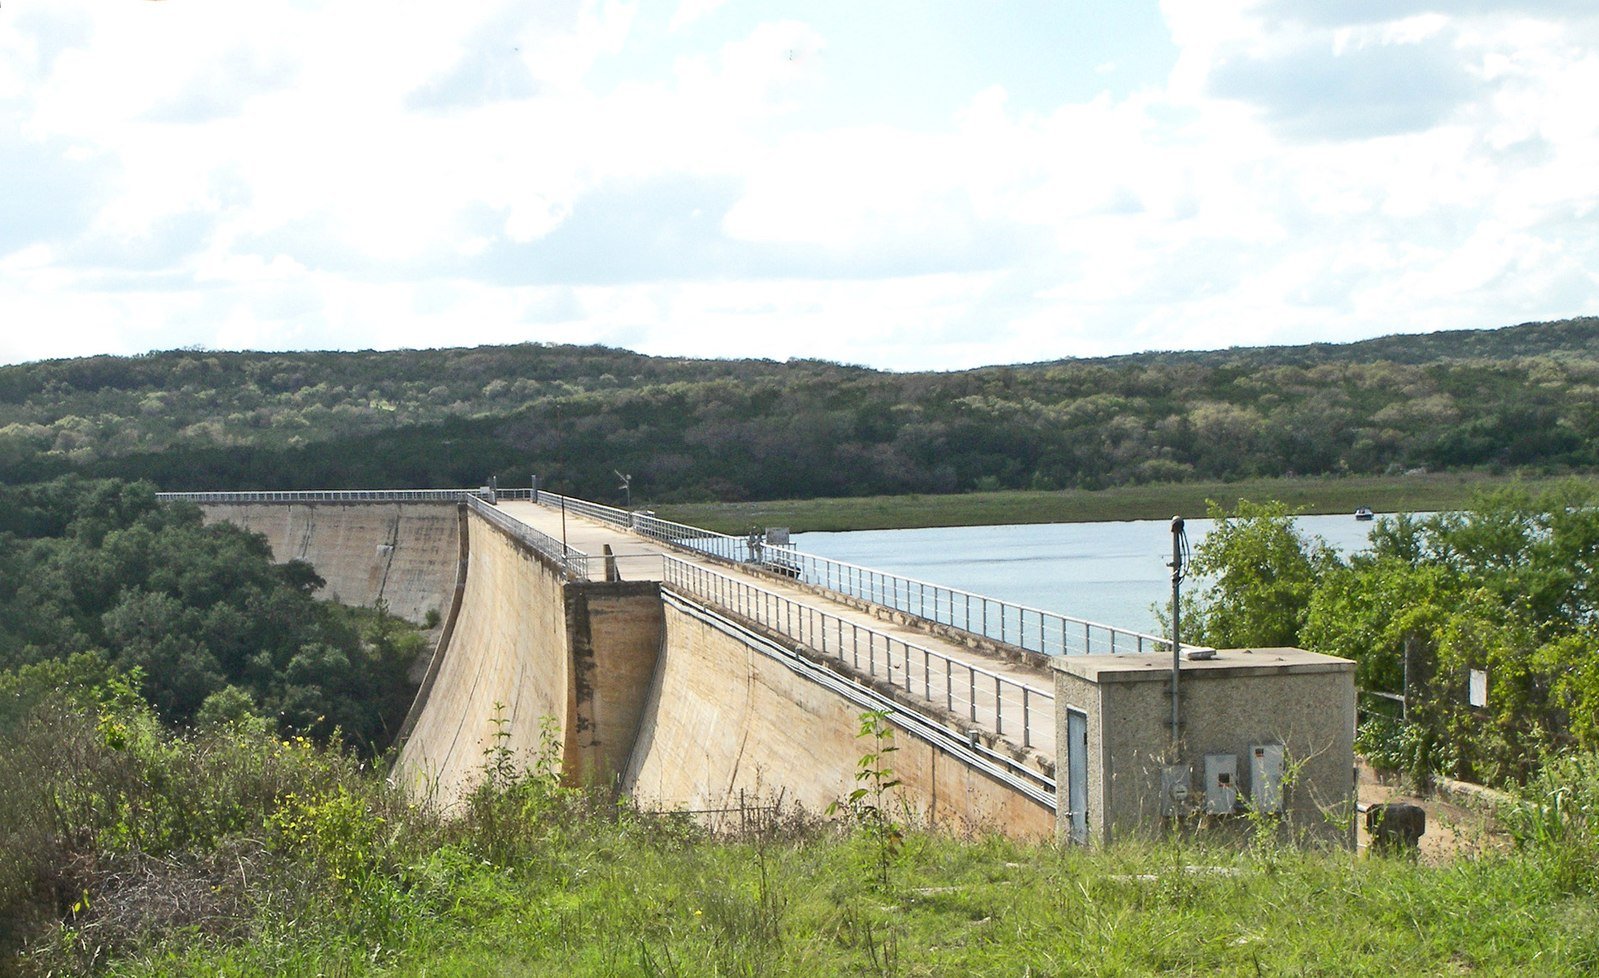 The dam at Medina Lake